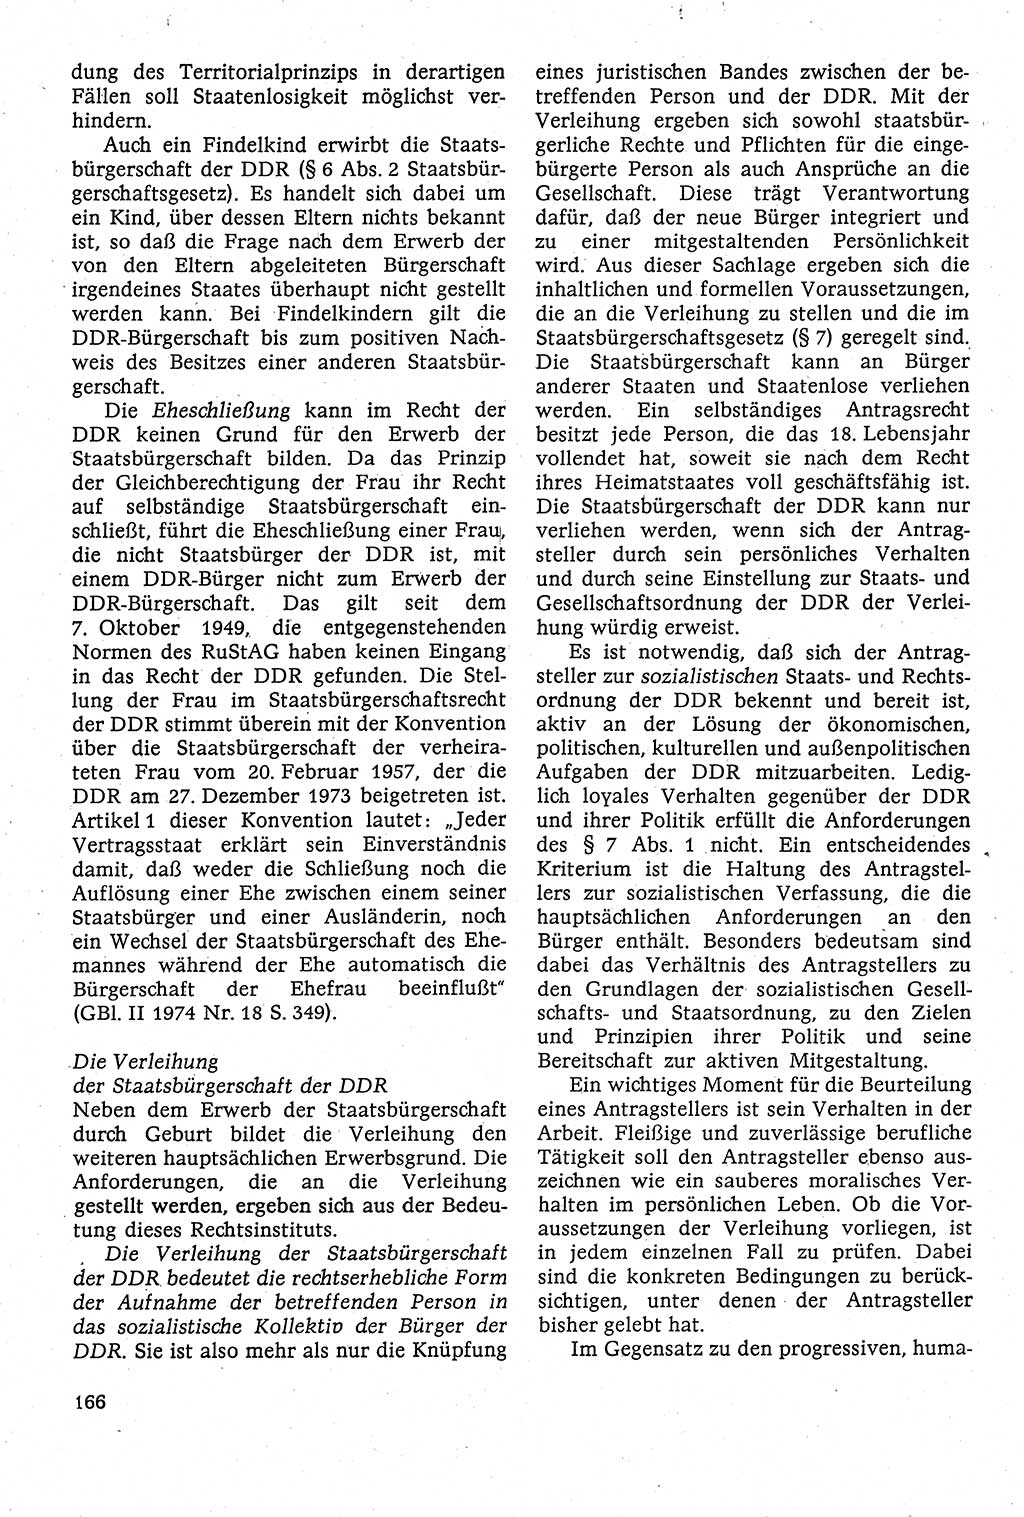 Staatsrecht der DDR [Deutsche Demokratische Republik (DDR)], Lehrbuch 1984, Seite 166 (St.-R. DDR Lb. 1984, S. 166)